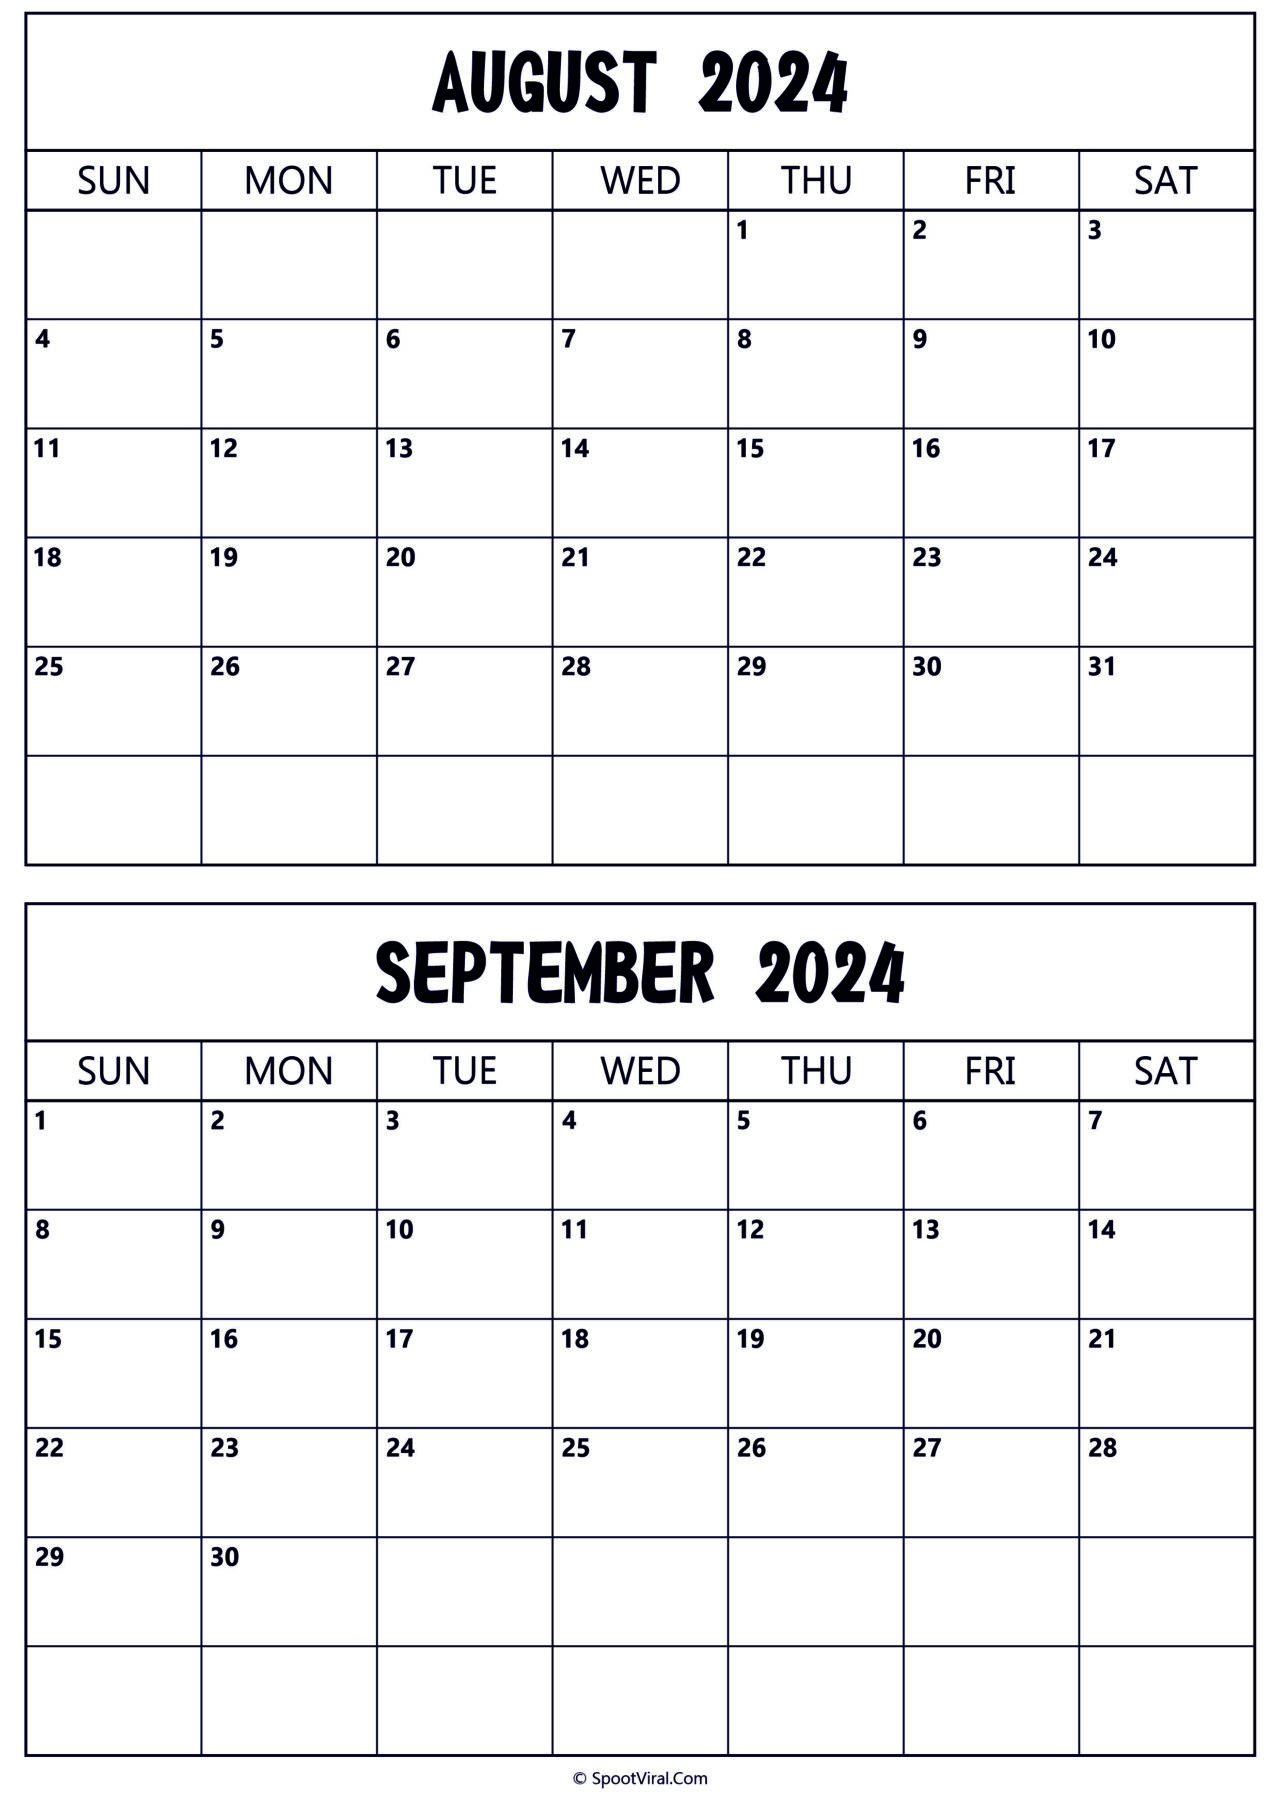 August September 2024 Calendar Templates - SpootViral